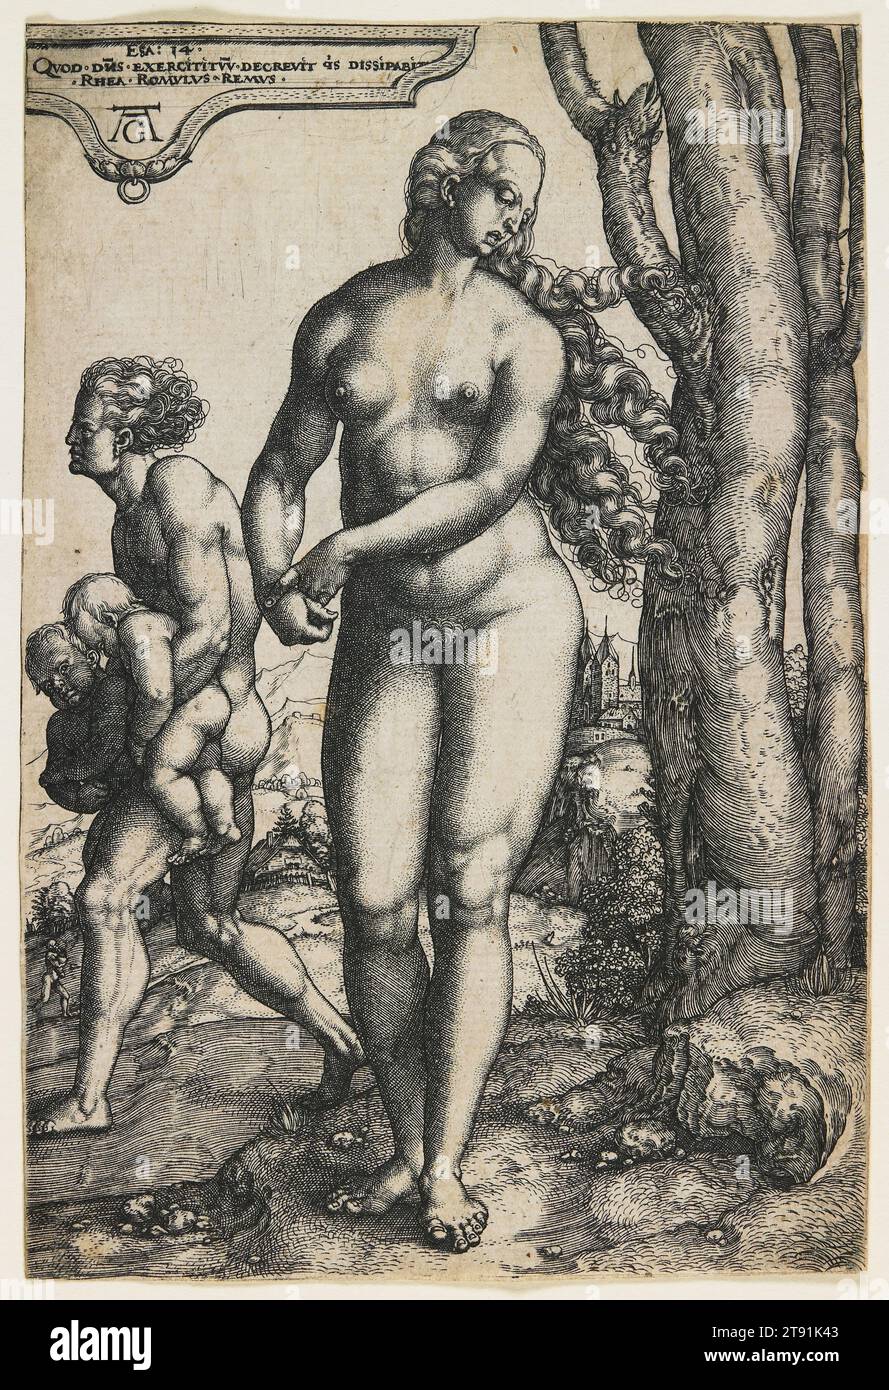 Rhea Sylvia (Romulus e Remus), c. 1530, Heinrich Aldegrever, tedesco, 1502–dopo il 1555/61, 13/16 x 7/8 poll. (14,76 x 9,84 cm) (immagine), incisione, Germania, XVI secolo, nella mitologia romana Rhea Sylvia era la madre di Romolo e Remo, i leggendari fondatori di Roma. Era stata una delle Vestali, a cui era richiesto di preservare la loro castità. Quando rimase incinta (disse il dio Marte), suo fratello malvagio Amulio la fece seppellire viva, la punizione data alle Vestali che violavano il loro obbligo. I suoi gemelli sono stati gettati nel fiume Tevere, ma sono stati salvati Foto Stock